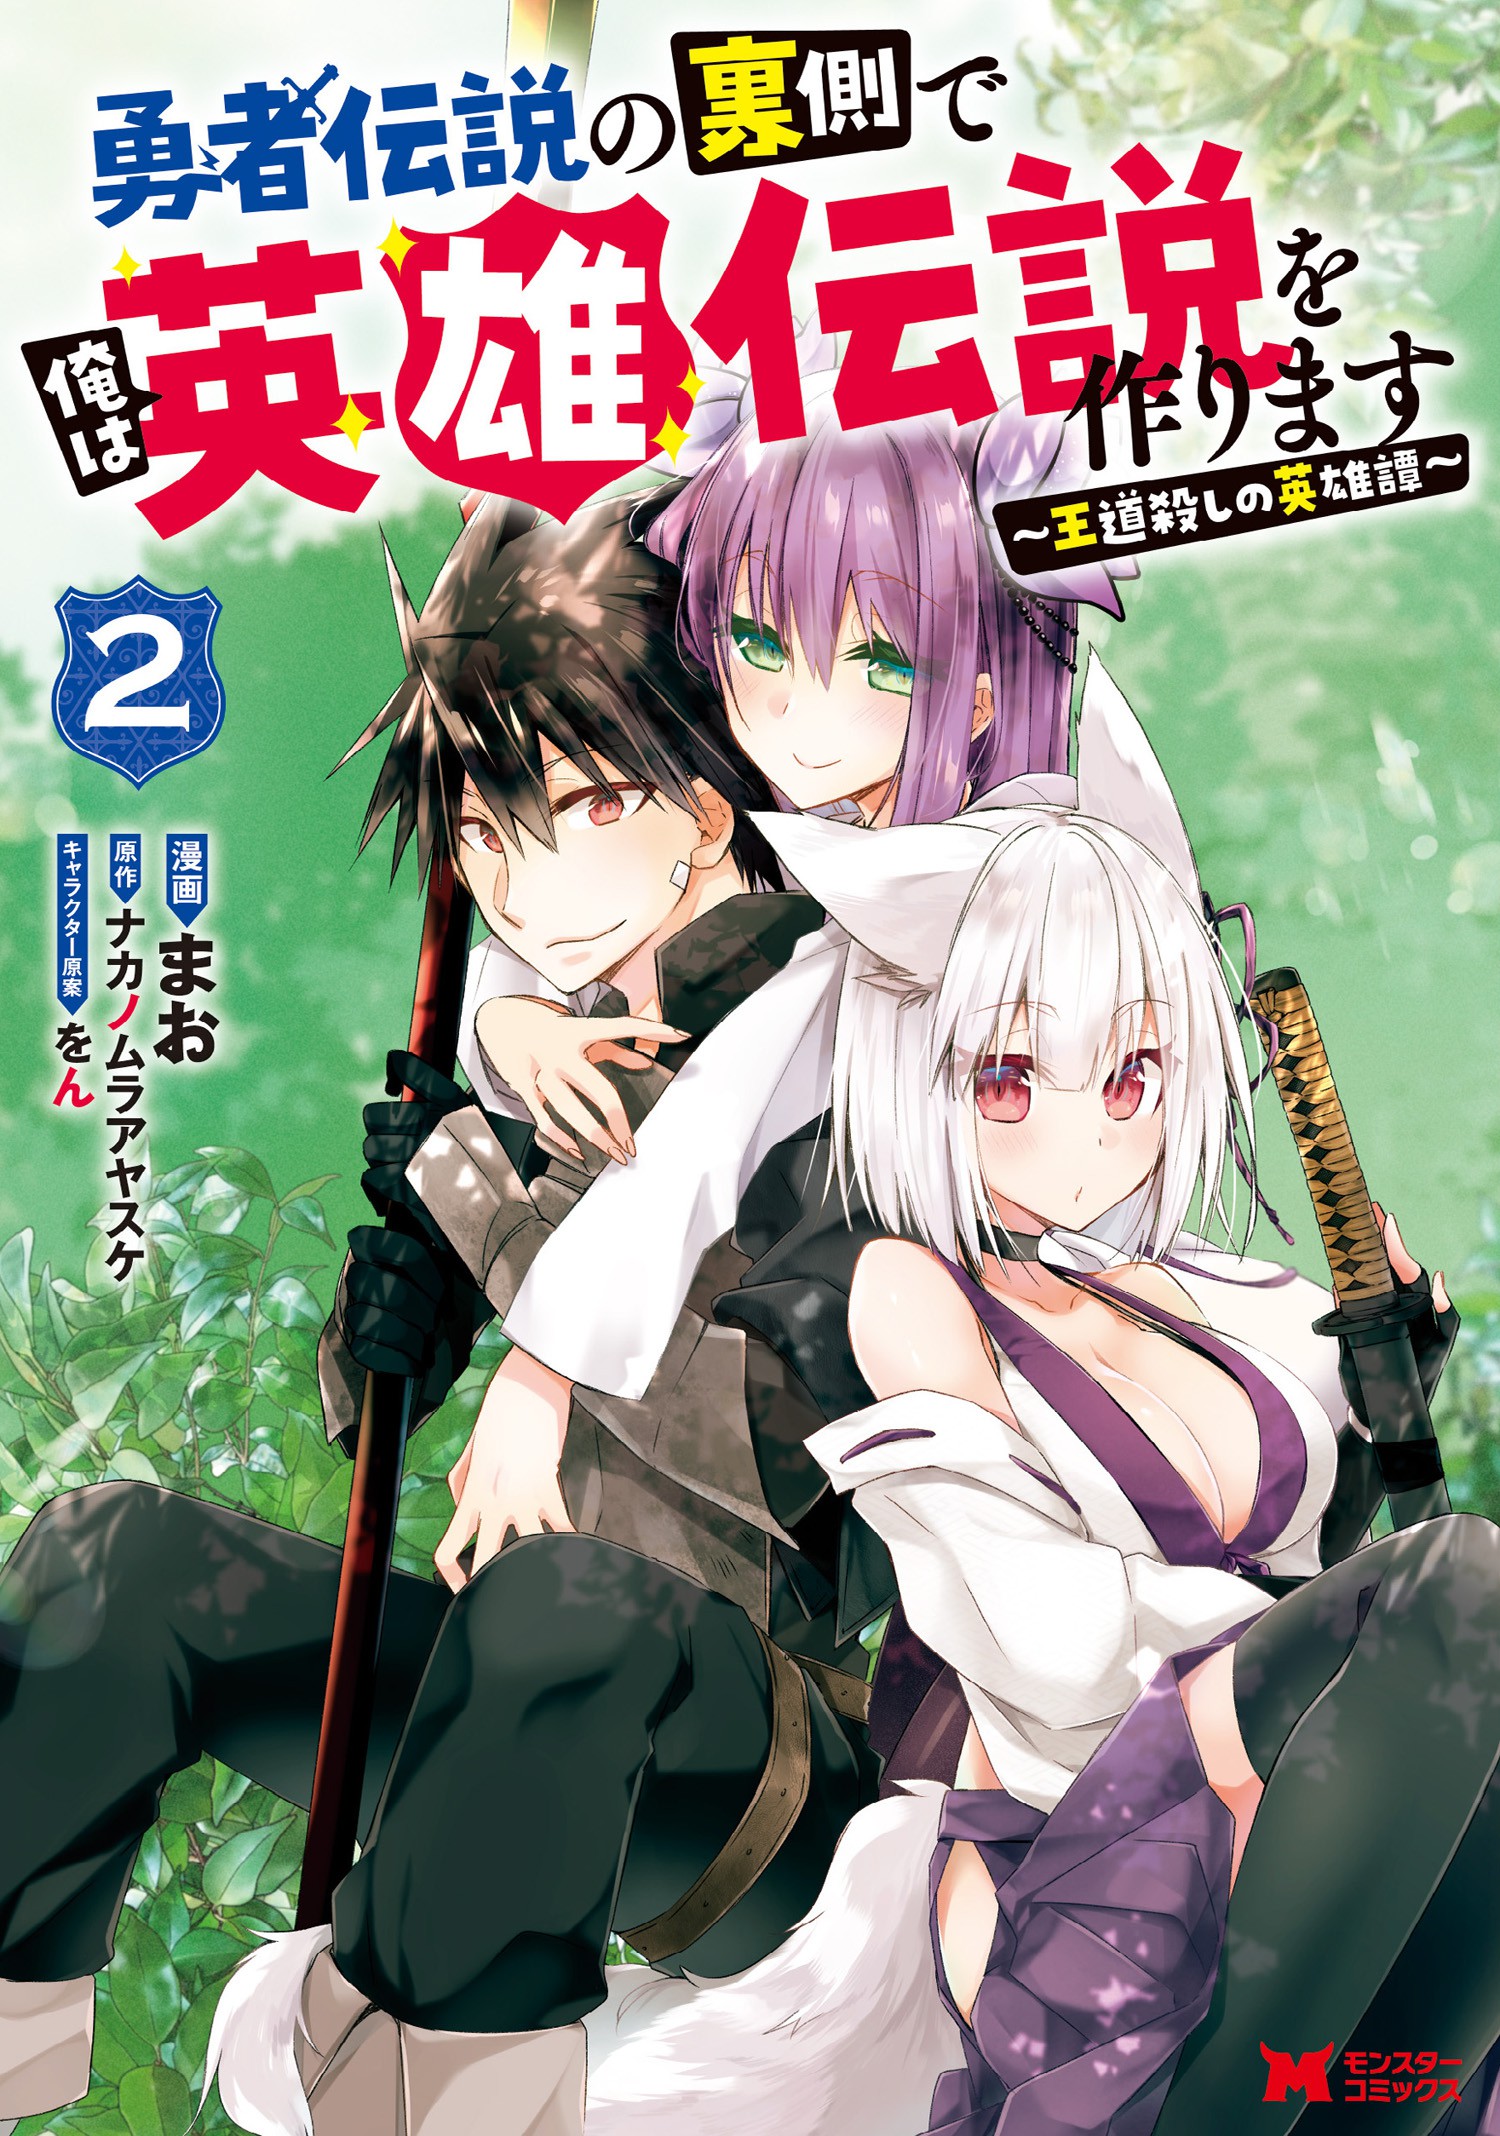 Densetsu no Yuusha no Densetsu (Light Novel) Manga